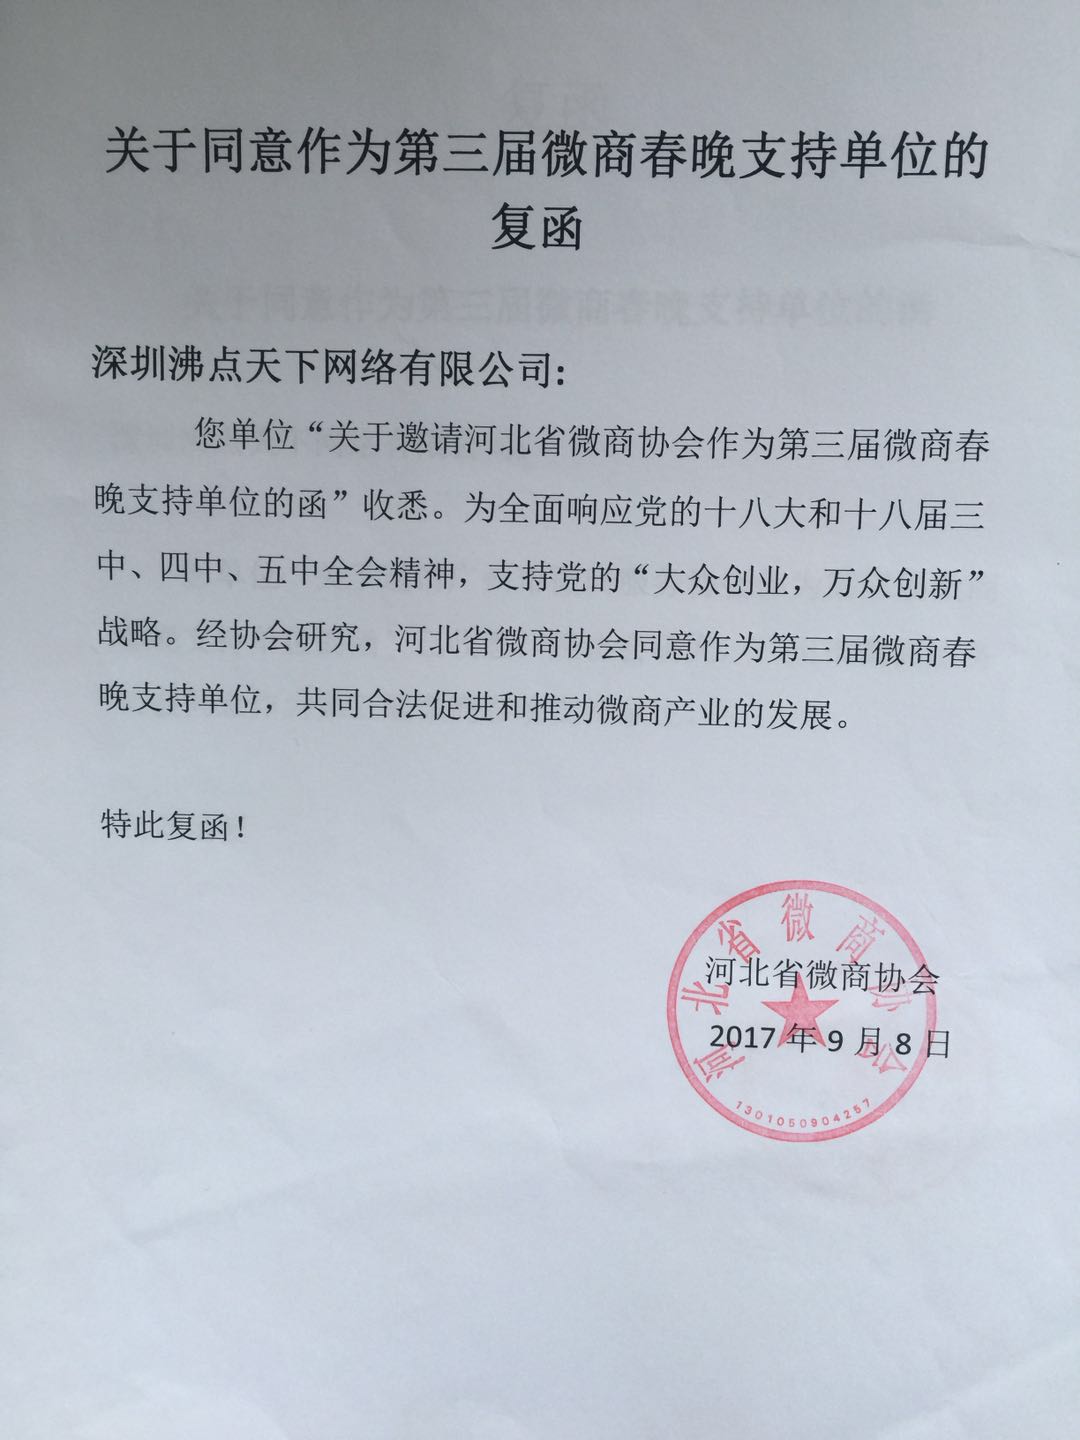 河北省微商协会关于同意作为第三届微商春晚支持单位的复函